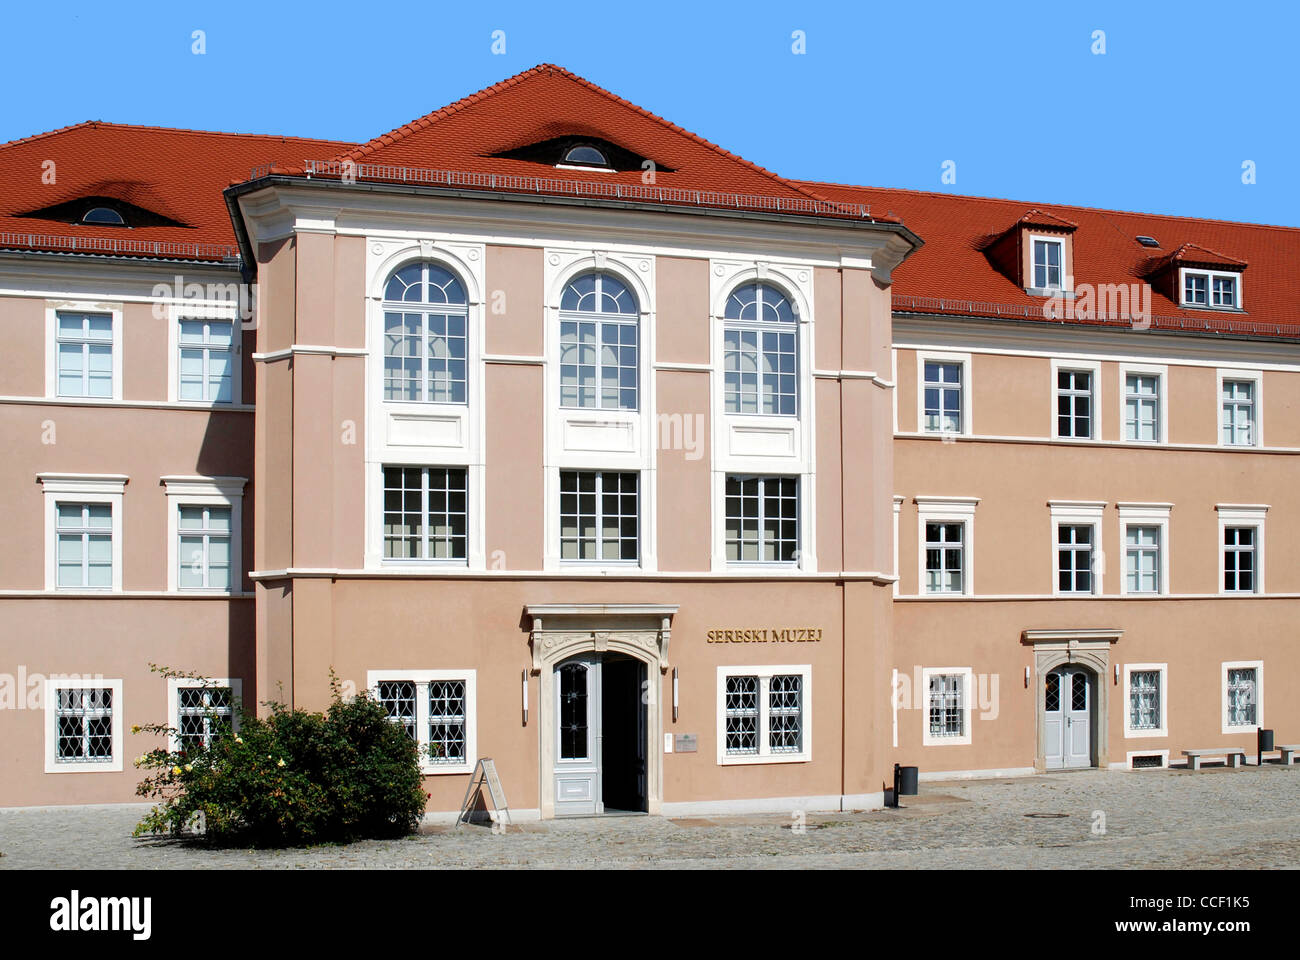 Sorbian museum Serbski Muzej on the Ortenburg in Bautzen. Stock Photo